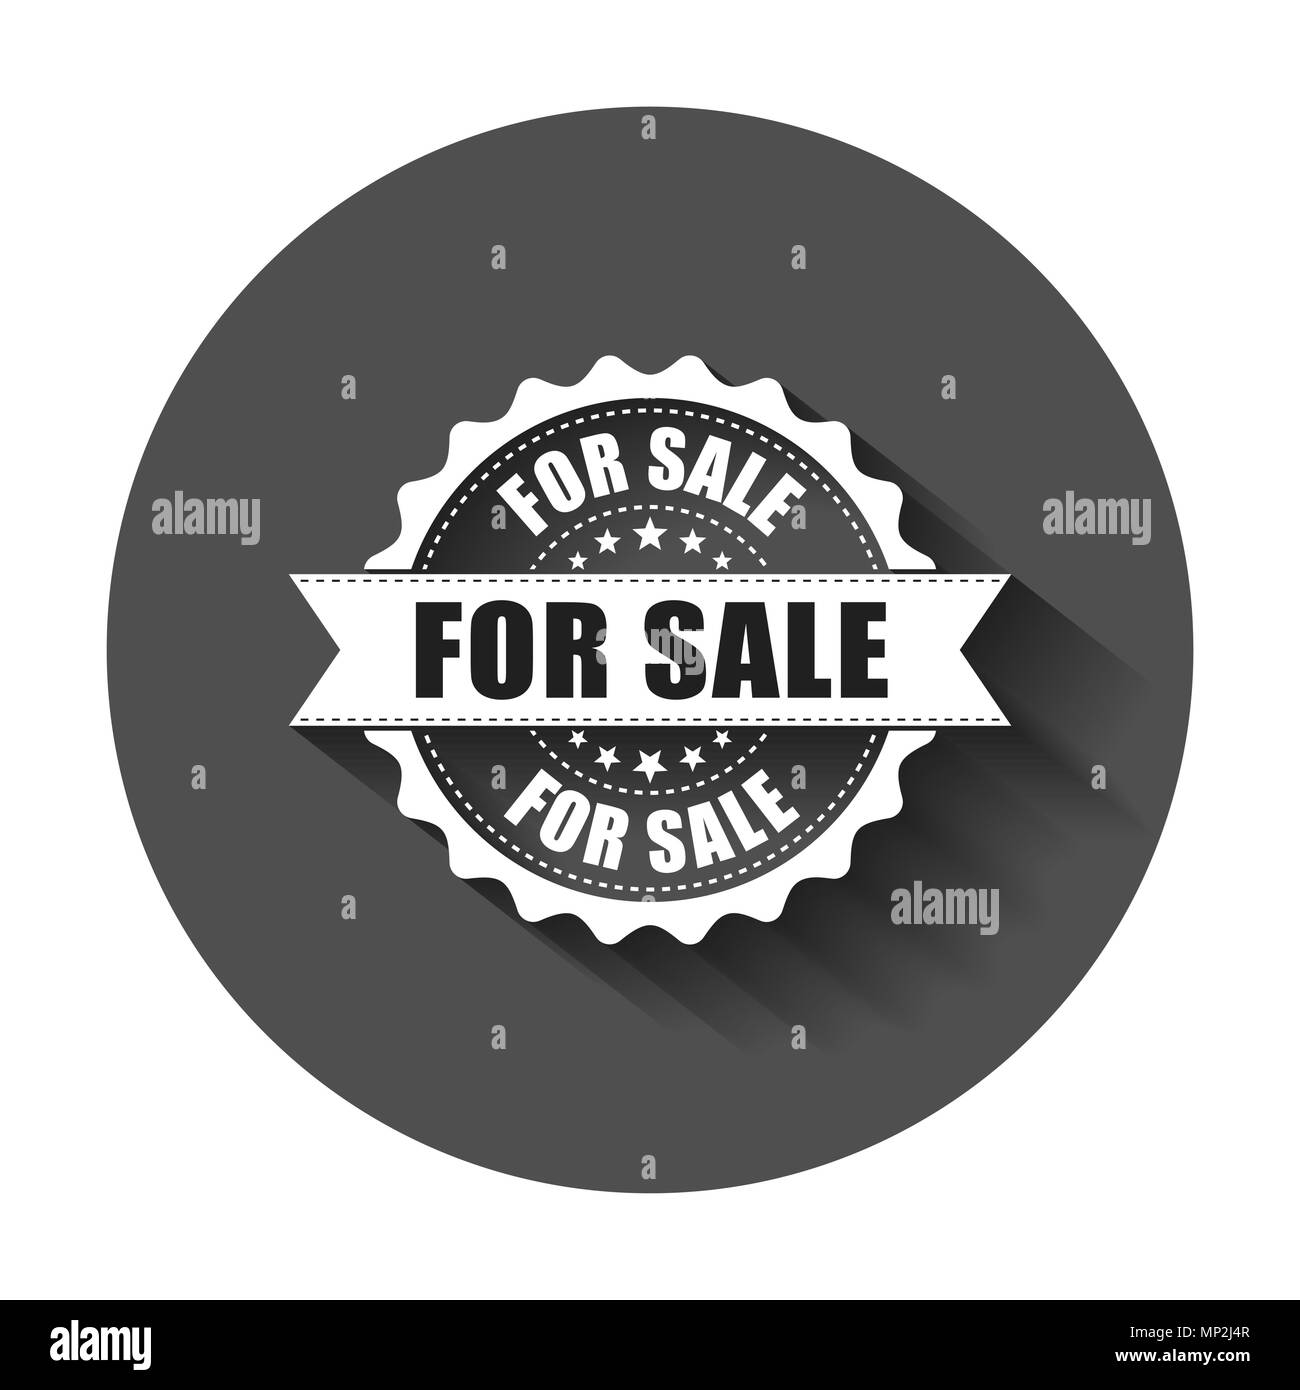 Bannière de vente flash Banque d'images noir et blanc - Alamy